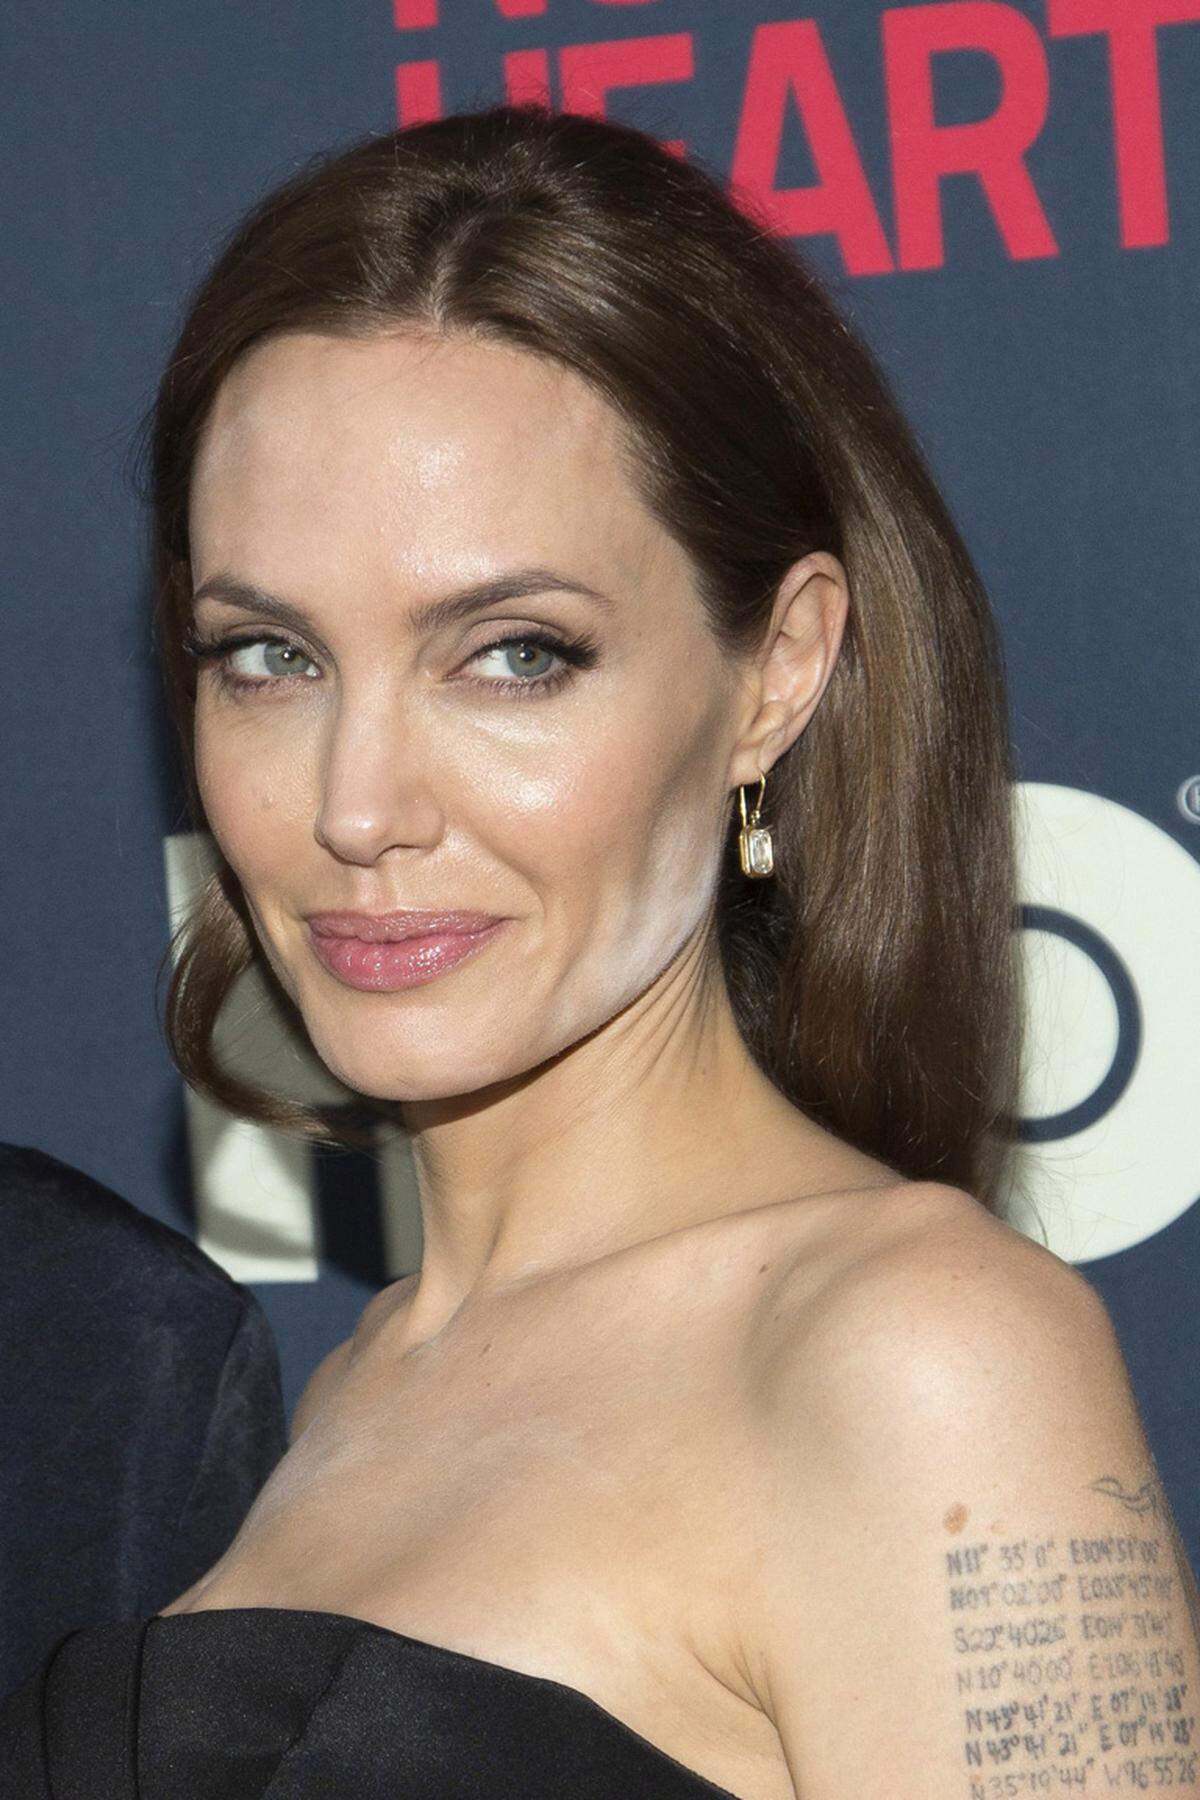 Nichtsahnend lächelte Angelina Jolie bei der "The Normal Heart"-Premiere in New York den Fotografen entgegen. Dabei hat das Styling-Team ganz schön gepfuscht, immerhin bringt das Blitzlicht deutliche Puderspuren an Kinn und Dekolleté zum Vorschein.